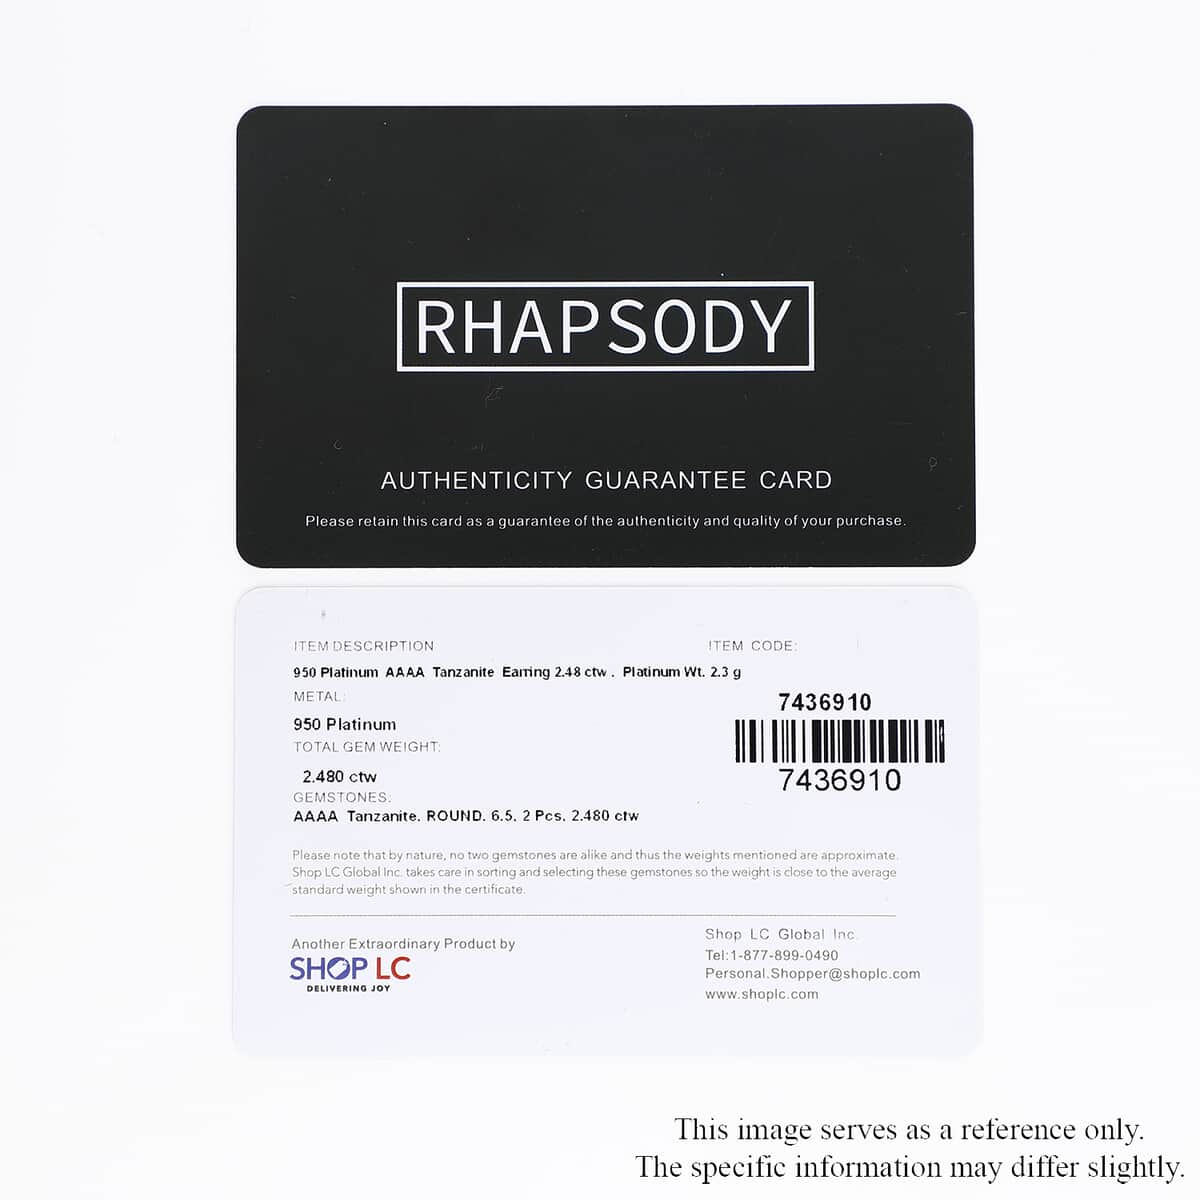  Rhapsody Certified & Appraised AAAA Tanzanite Earrings, Solitaire Stud Earrings,  950 Platinum Stud Earrings 2.50 ctw image number 7